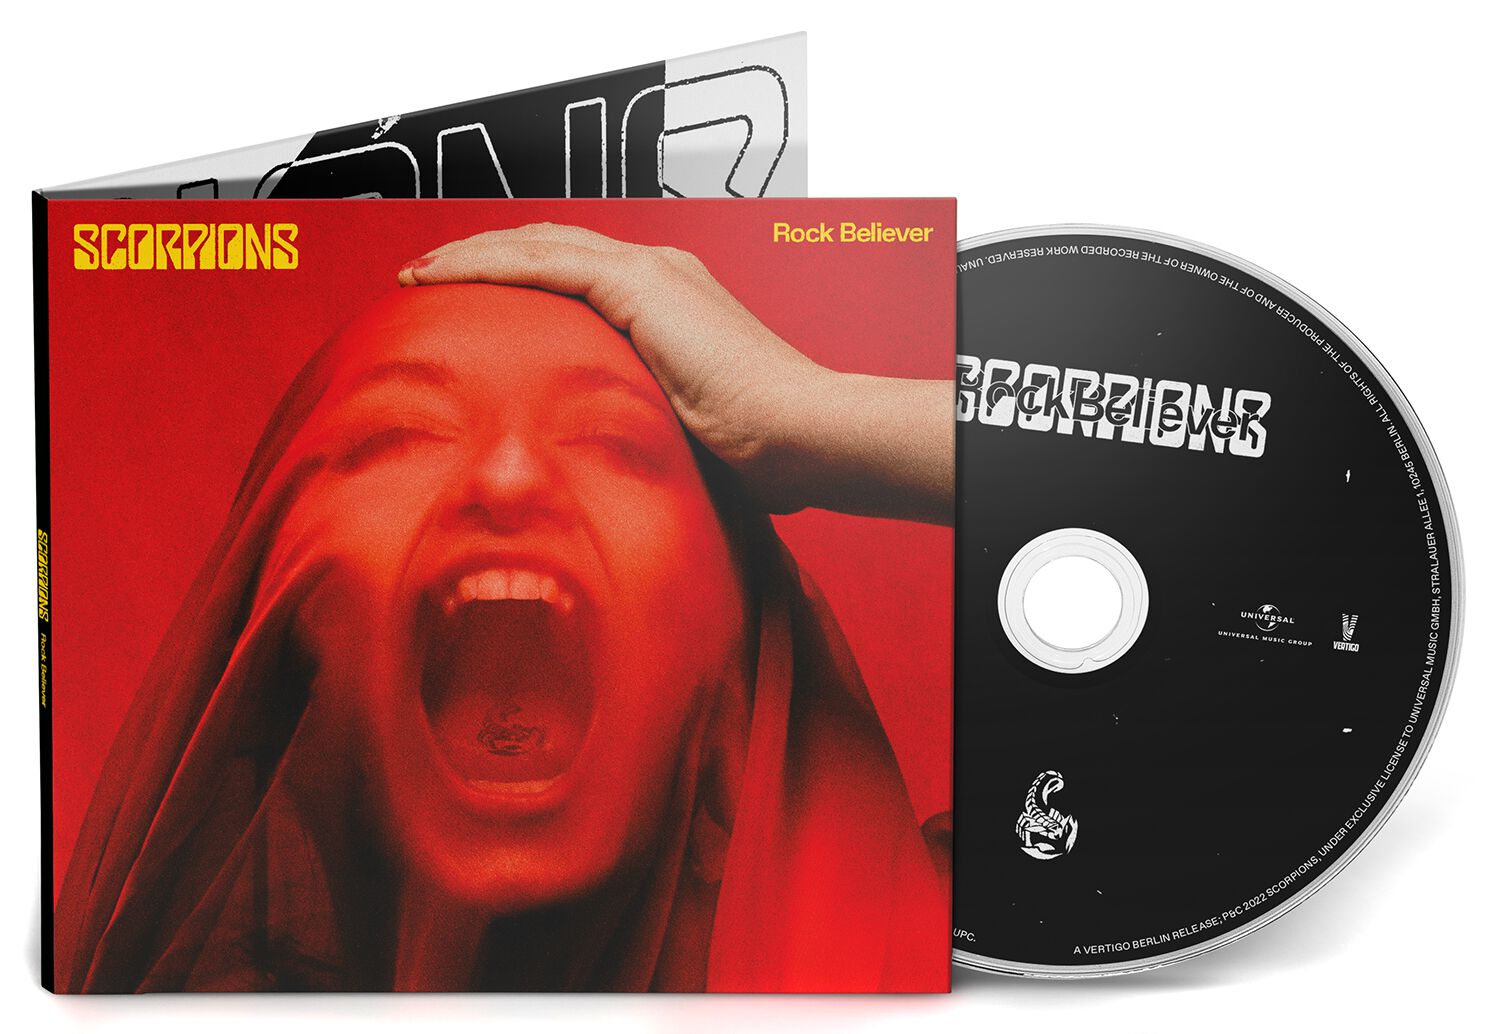 Image of Scorpions Rock Believer CD Standard